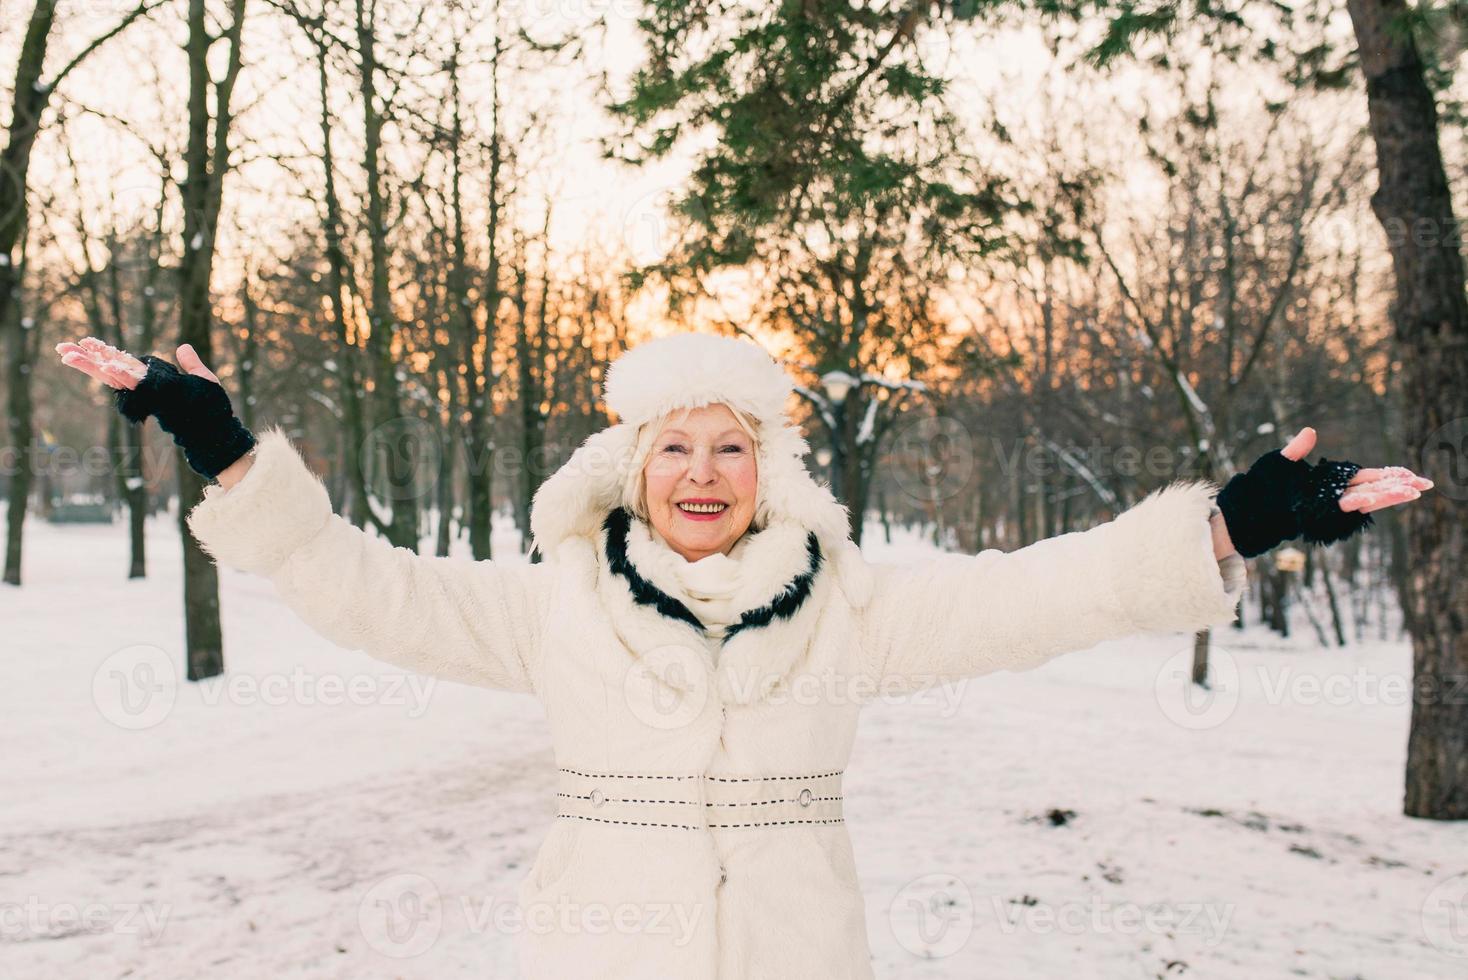 senior kvinna i vit hatt och päls njuter av vintern i snöskog. vinter, ålder, säsong koncept foto